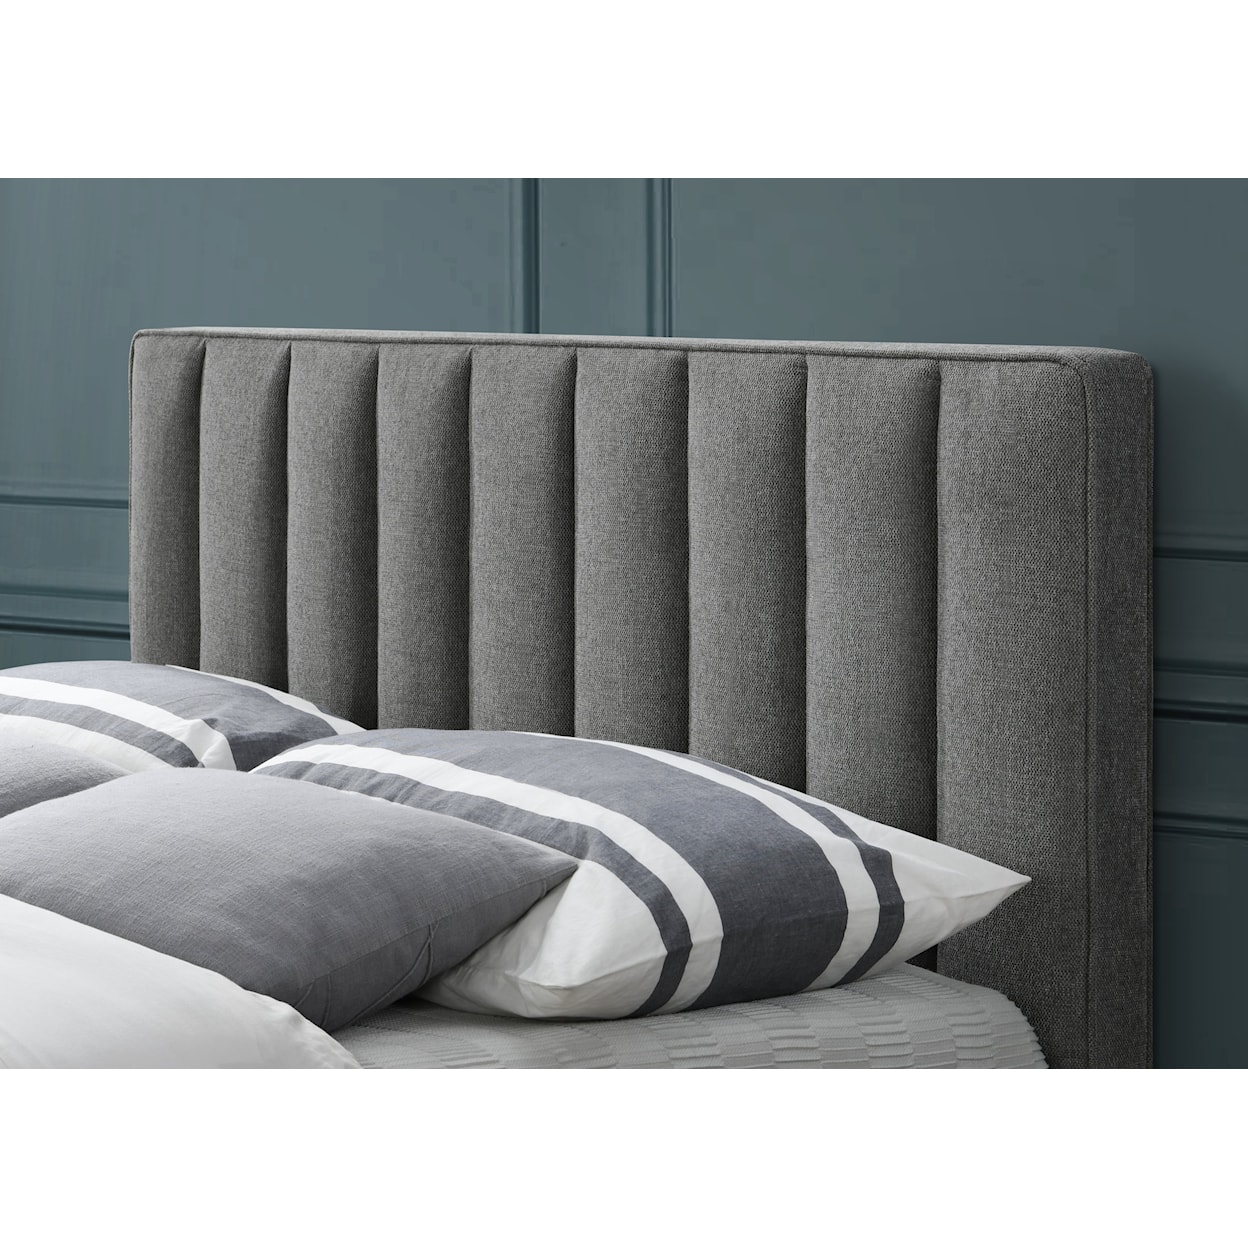 Meridian Furniture Vance Queen Panel Bed